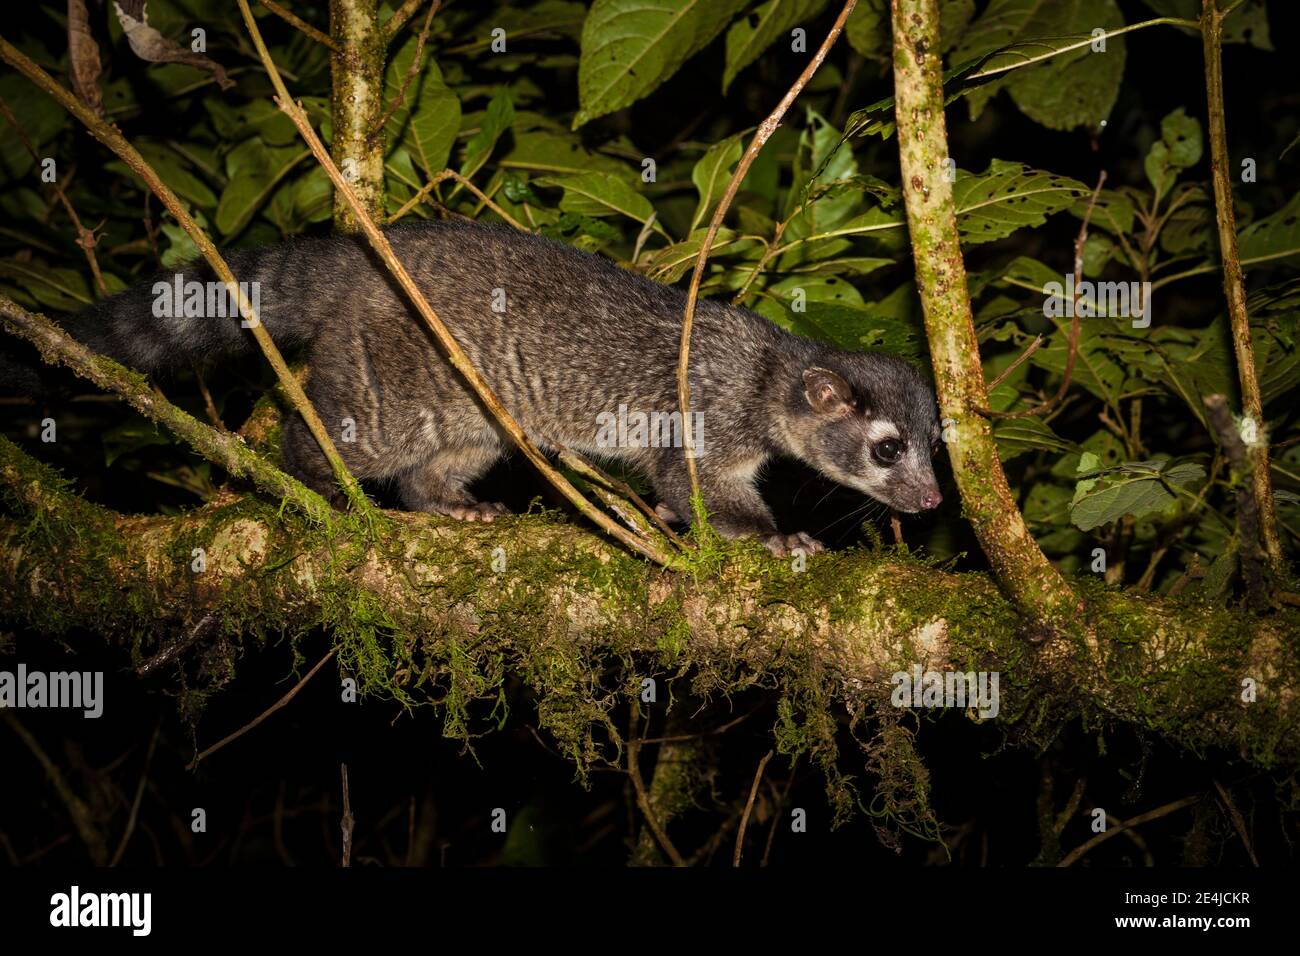 Cacomistle, Bassariscus sumichrasti, in La Amistad national park, altitude 2300 meters, Chiriqui province, Republic of Panama. Stock Photo